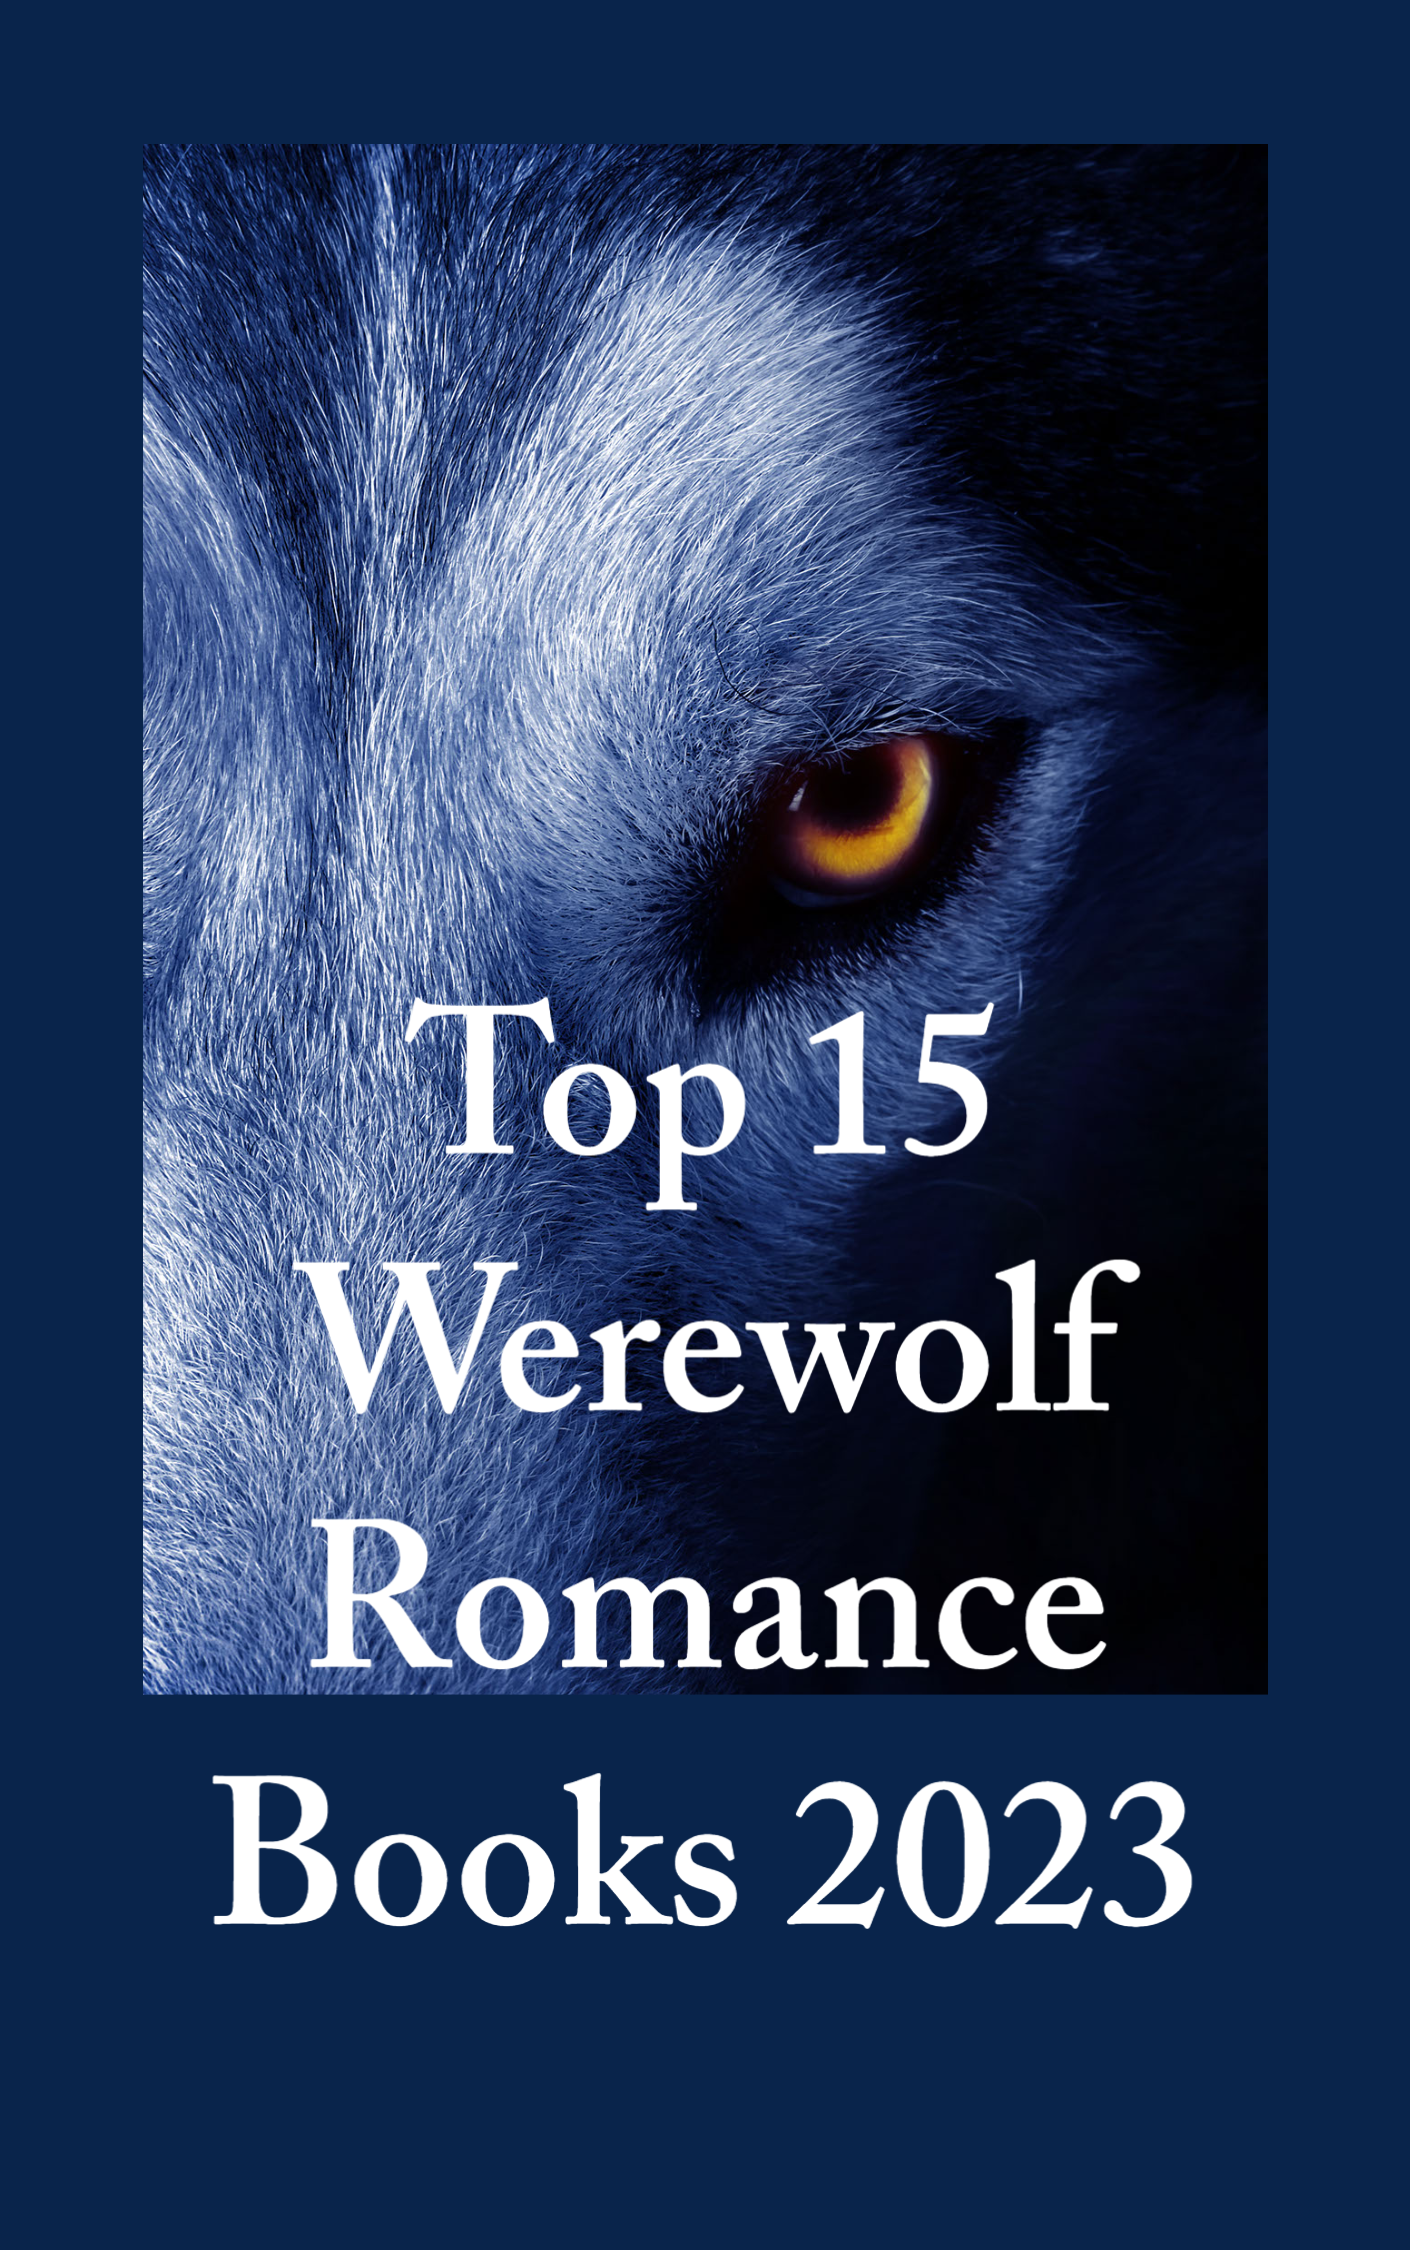 Top 15 Werewolf Romance Books 2023